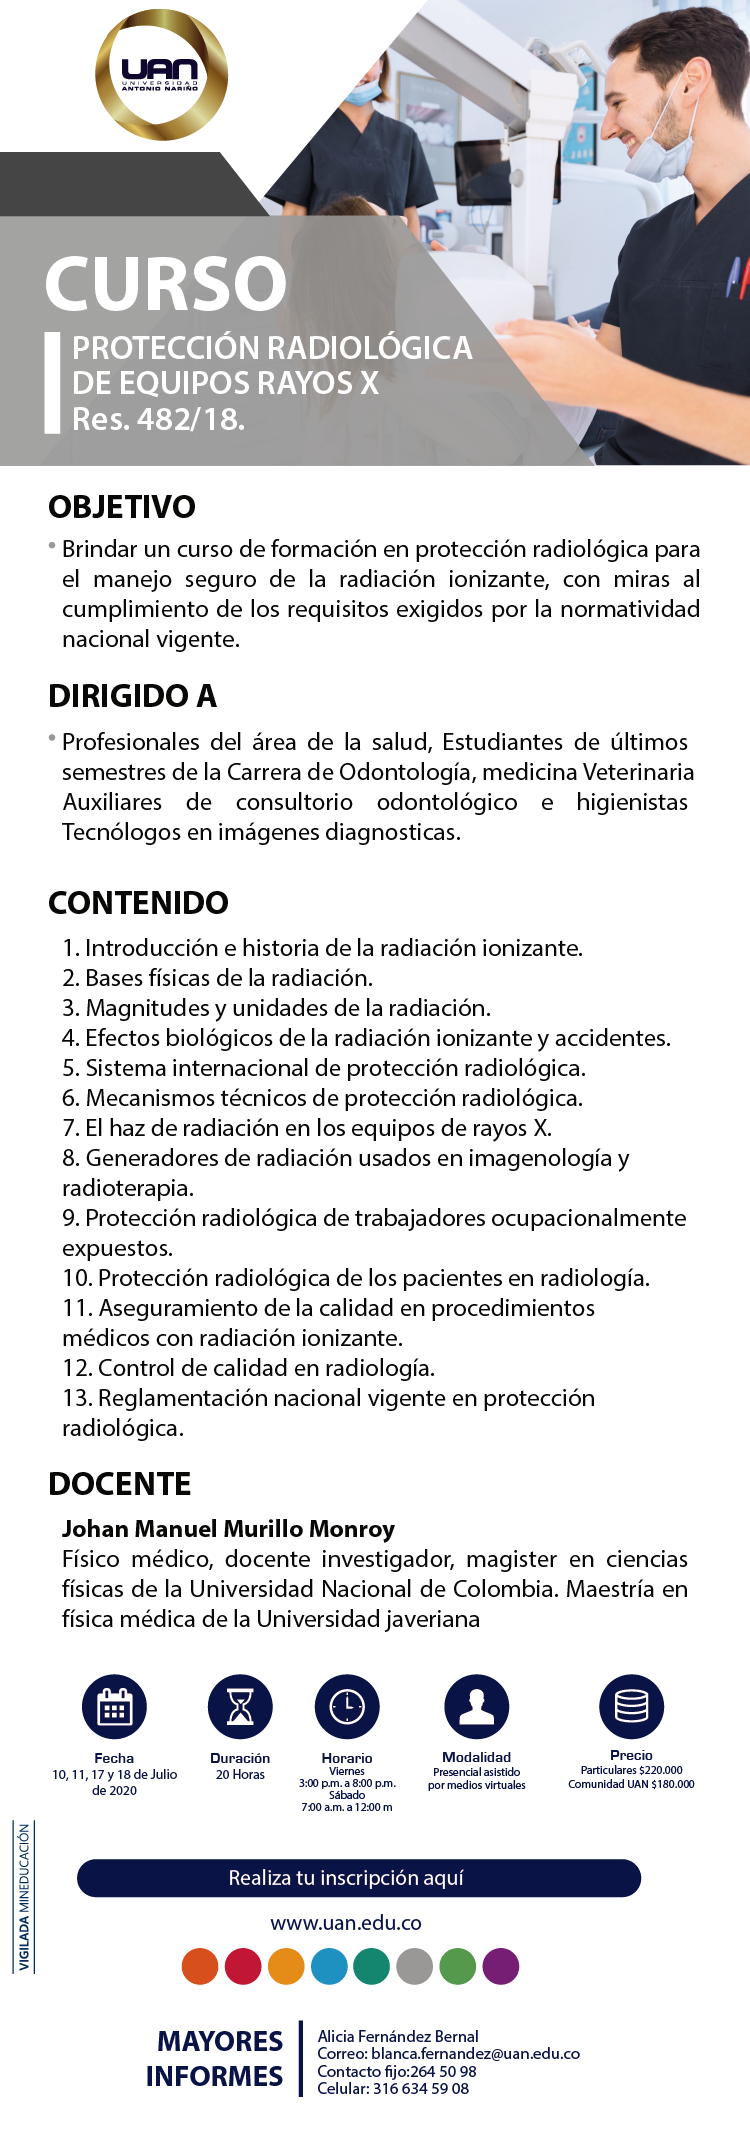 ProteccionRadiologicaEquiposRayosX Ibague1 2020 M